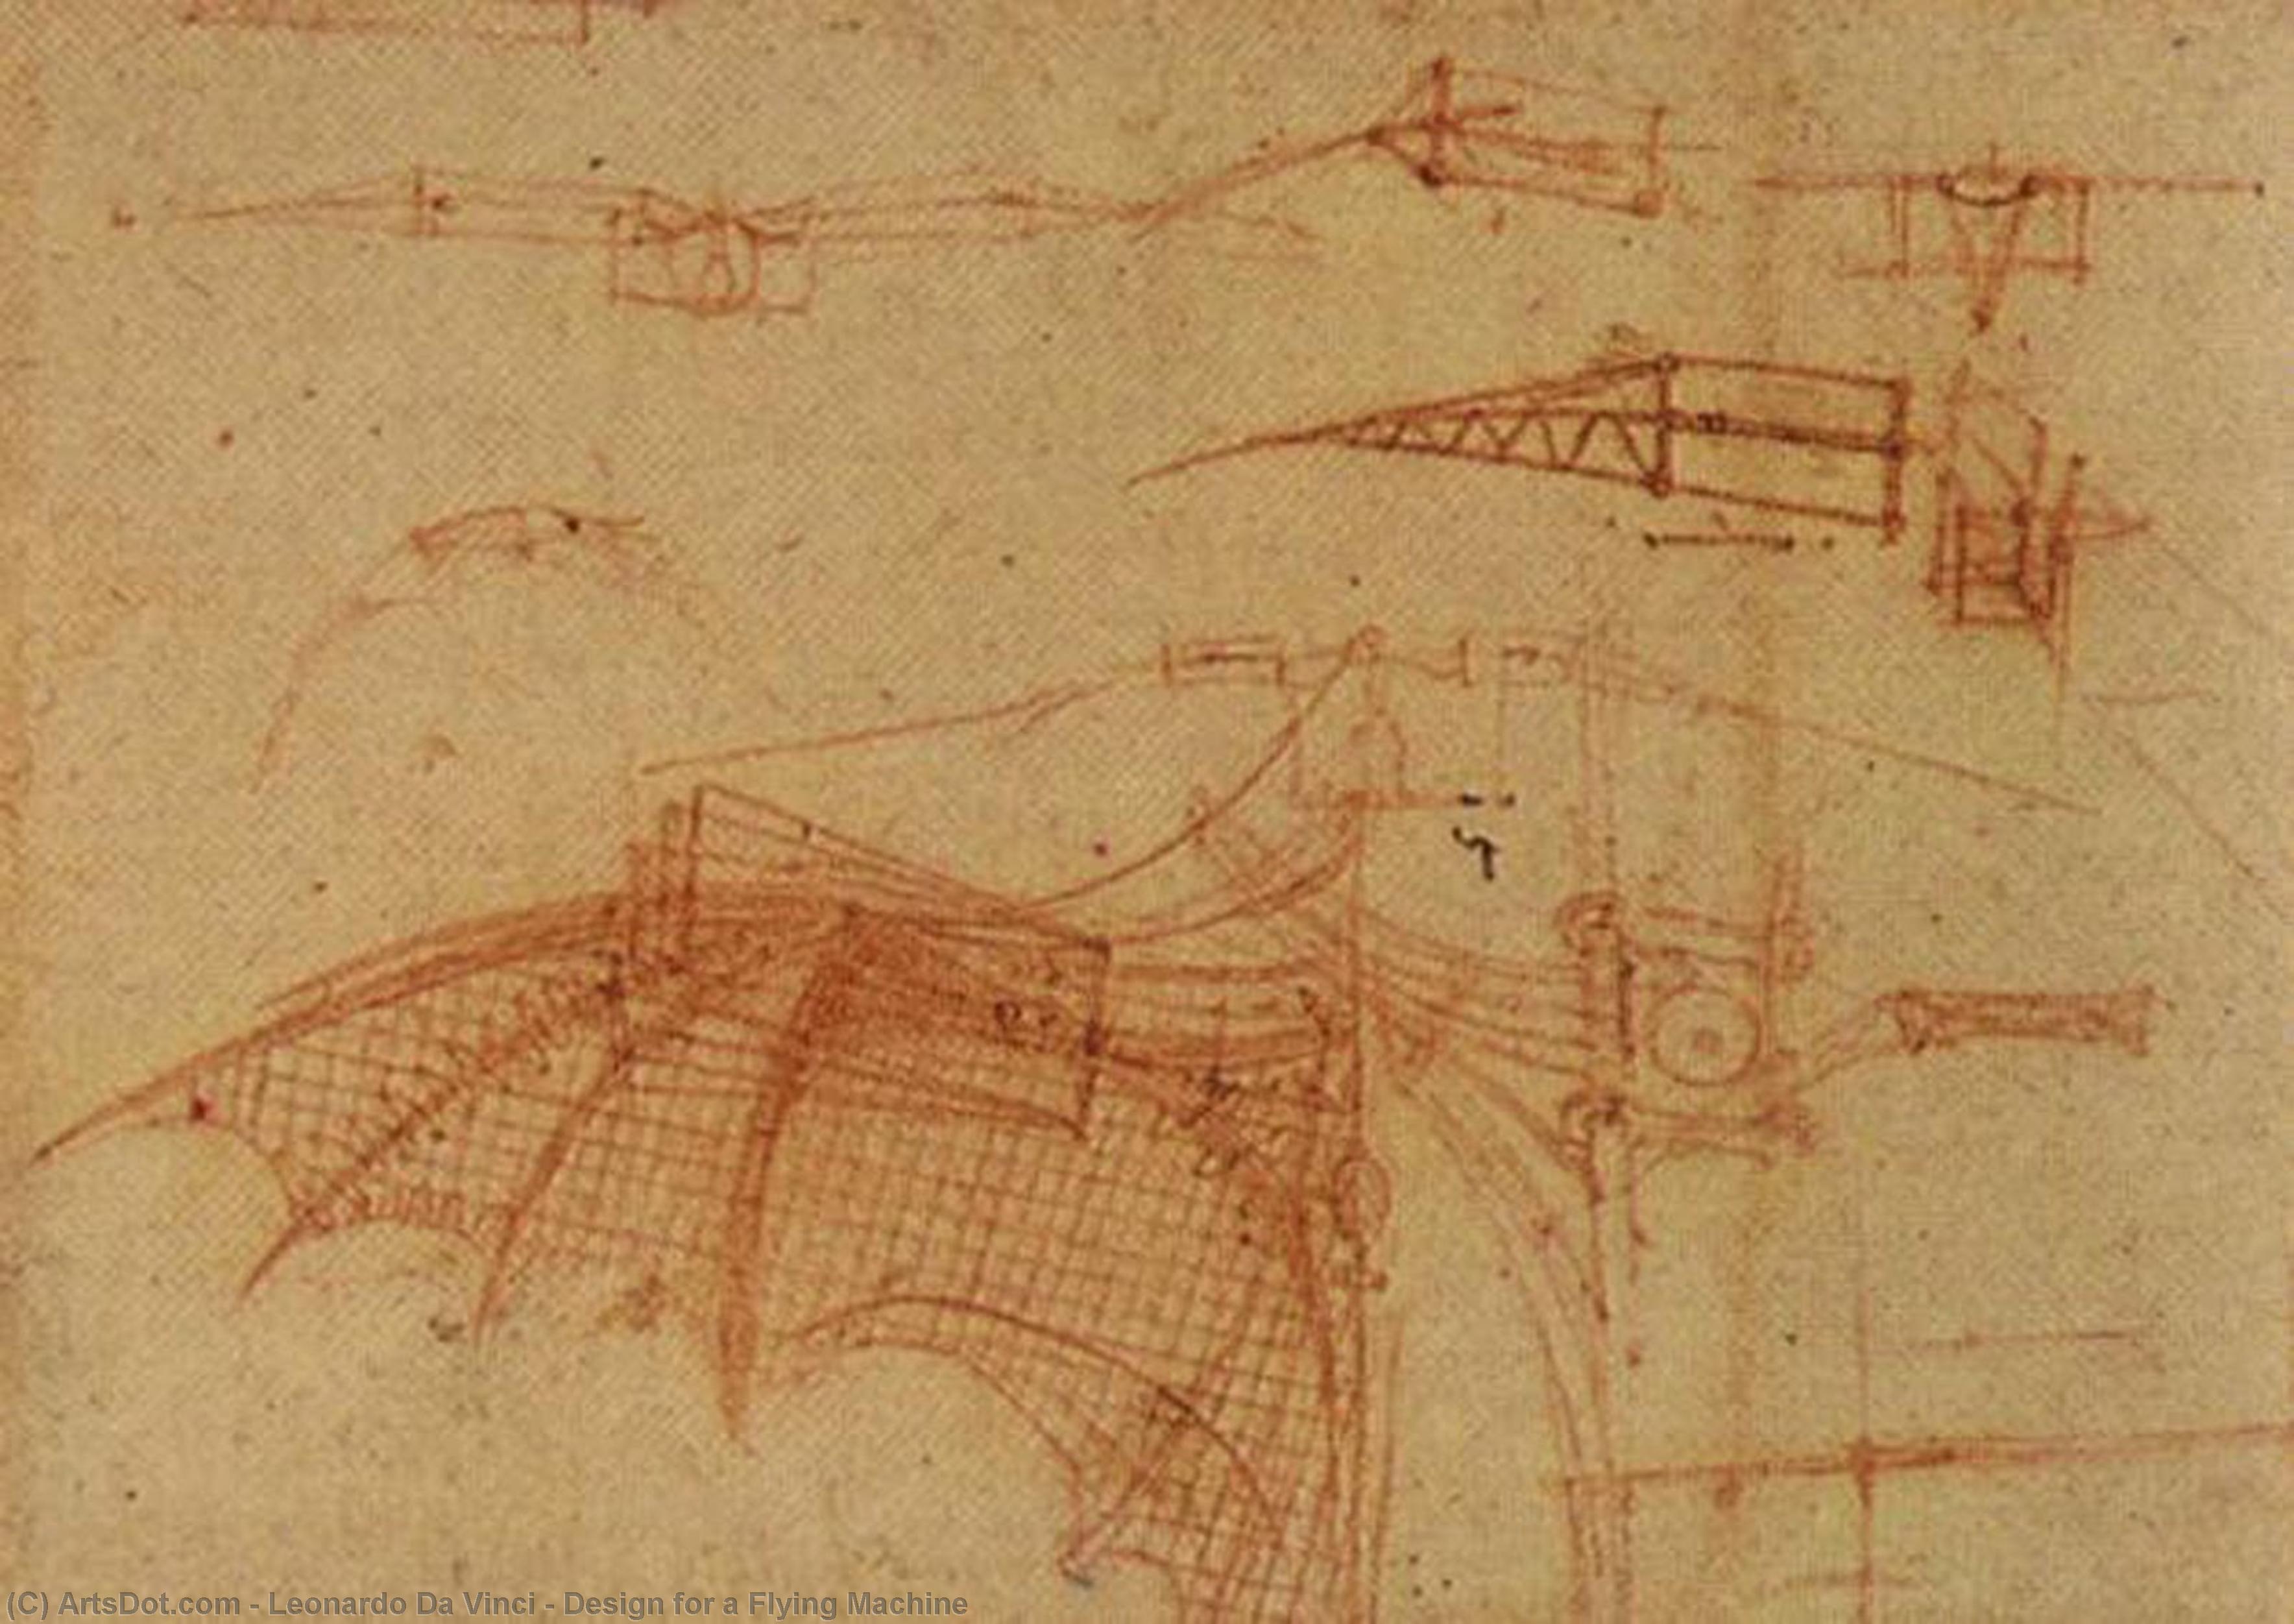 WikiOO.org – 美術百科全書 - 繪畫，作品 Leonardo Da Vinci - 设计 一个  飞行  机